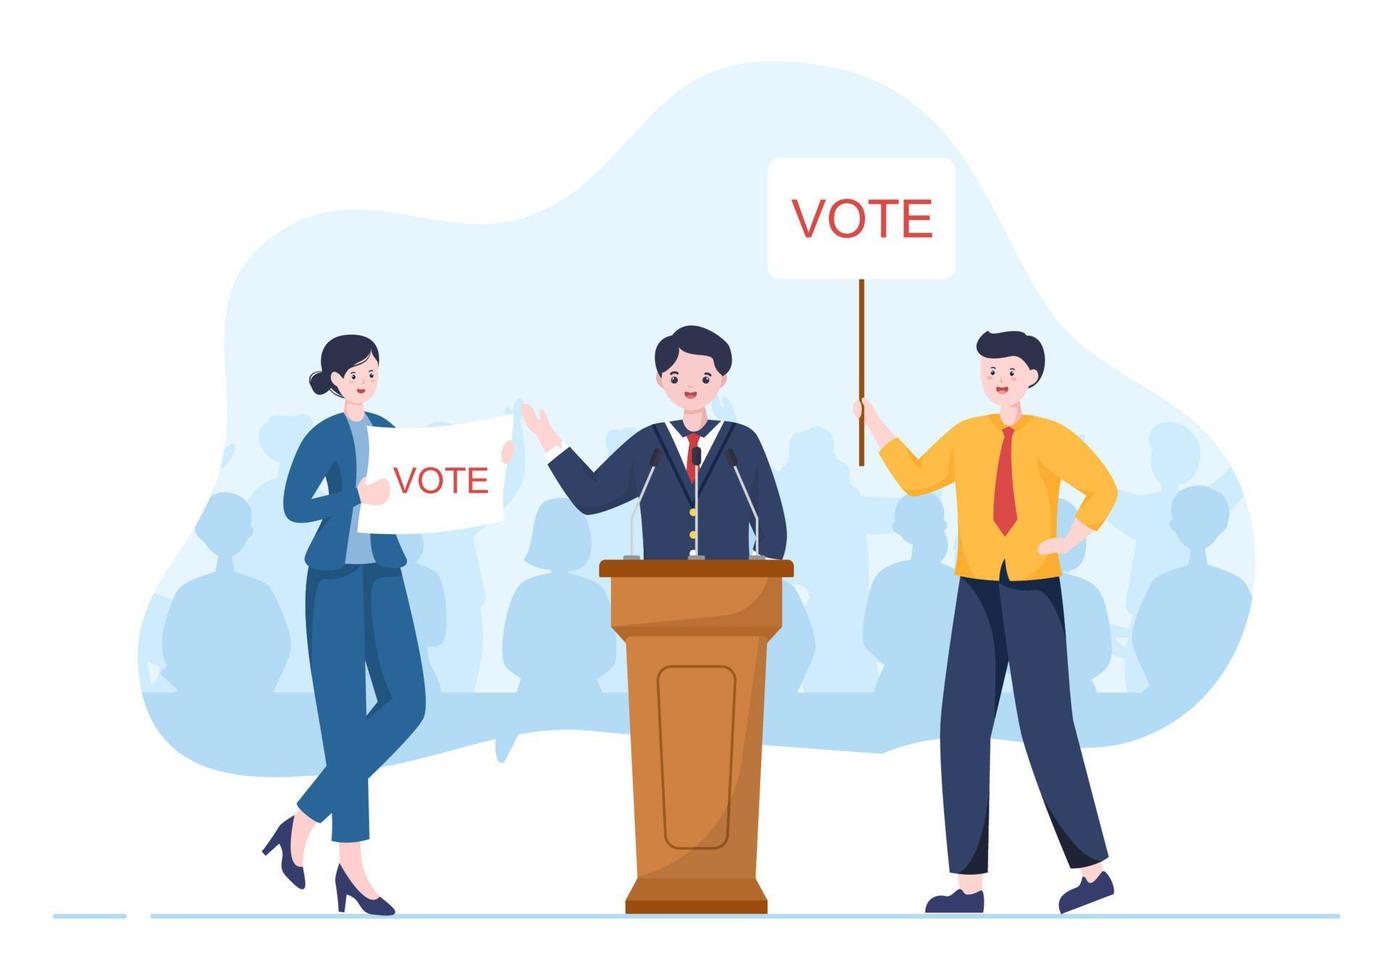 ilustração desenhada à mão dos desenhos animados do candidato político com conceito de debates para promoção, campanha eleitoral, discussão ativa e obter votos vetor